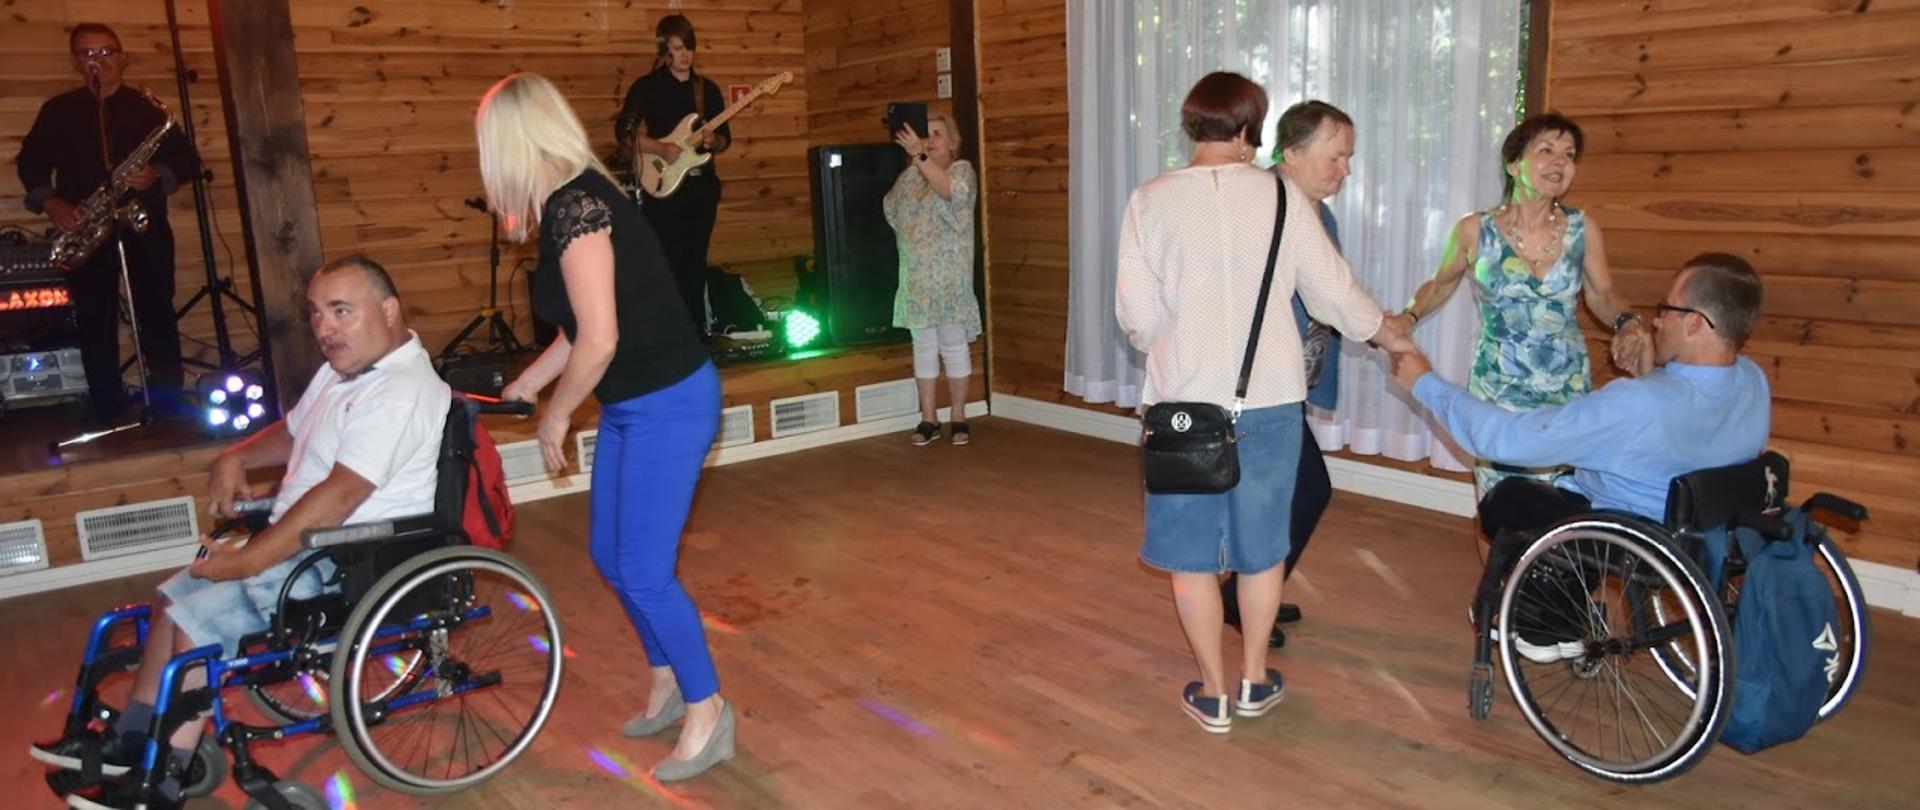 grupa osób niepełnosprawnych tańcząca w rytm muzyki